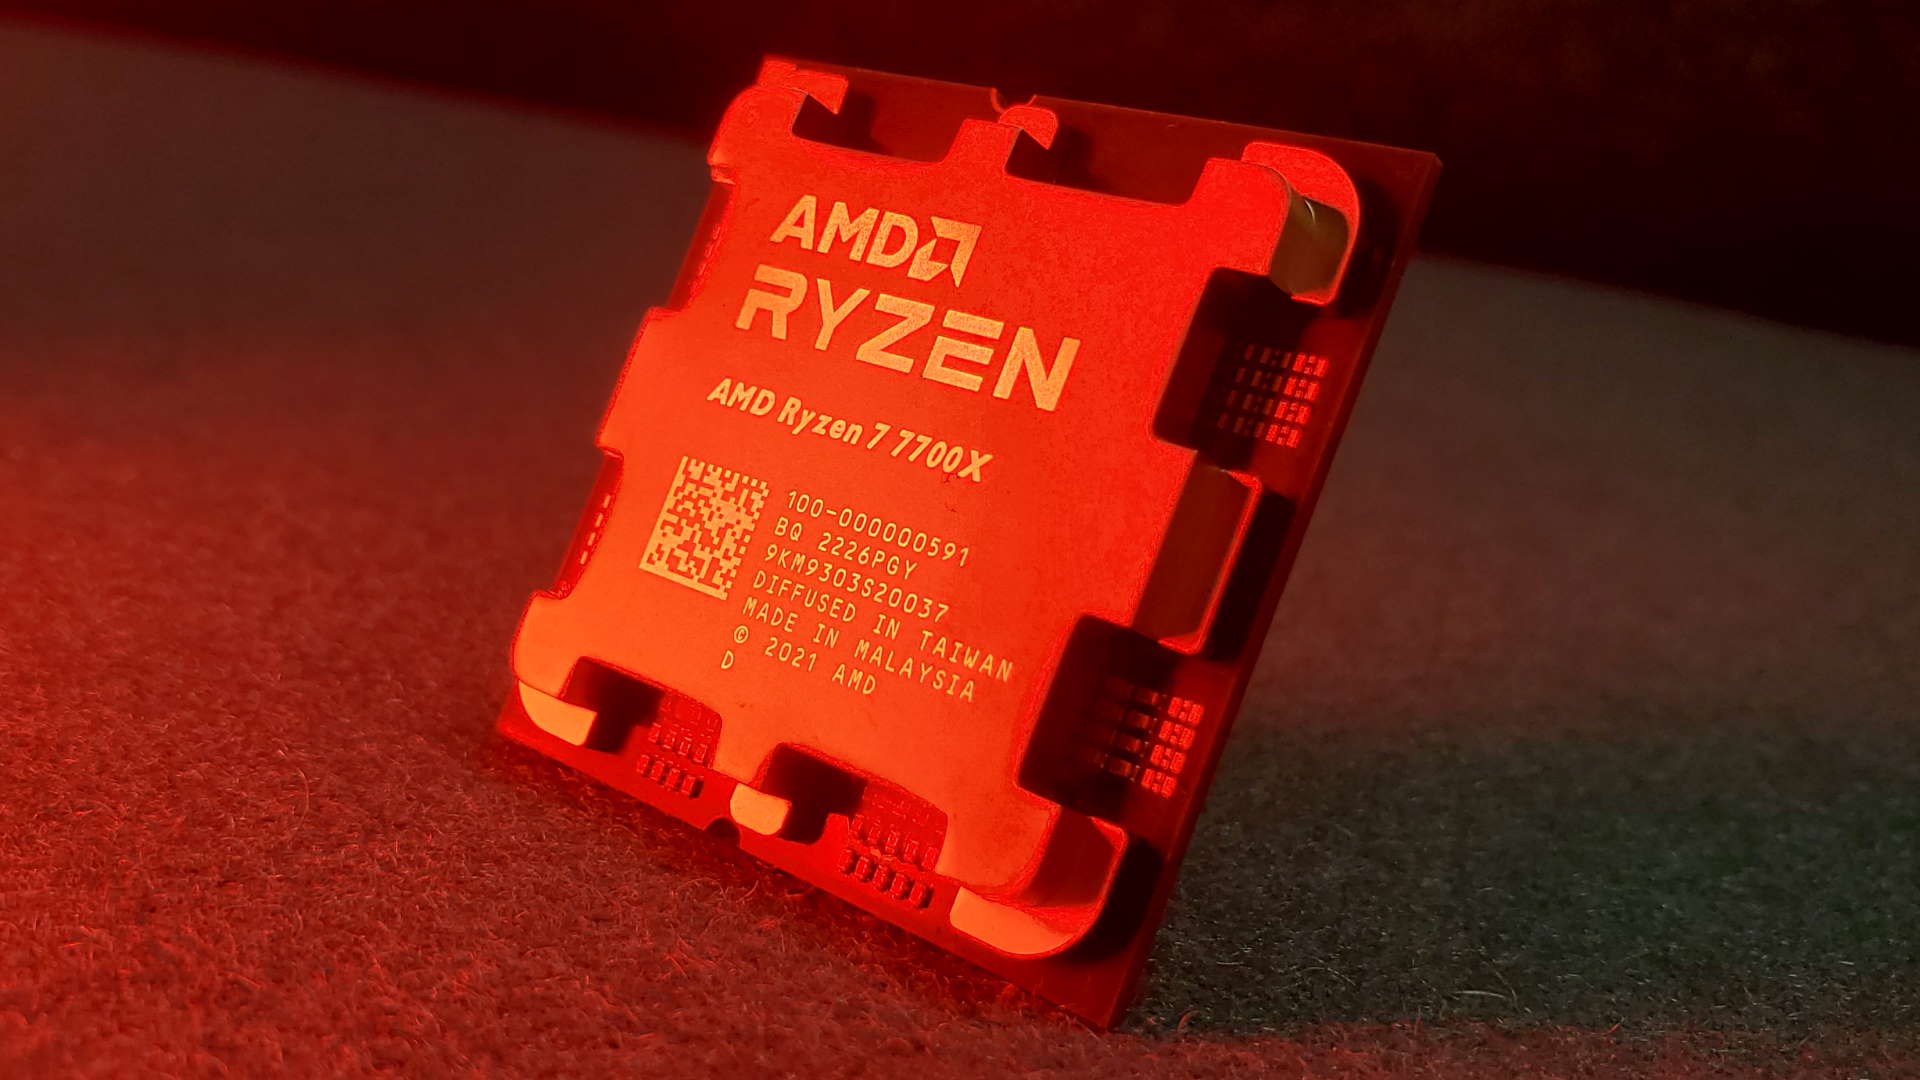 AMD Ryzen 9 7950X, Ryzen 9 7900X, Ryzen 7 7700X og Ryzen 5 7600X